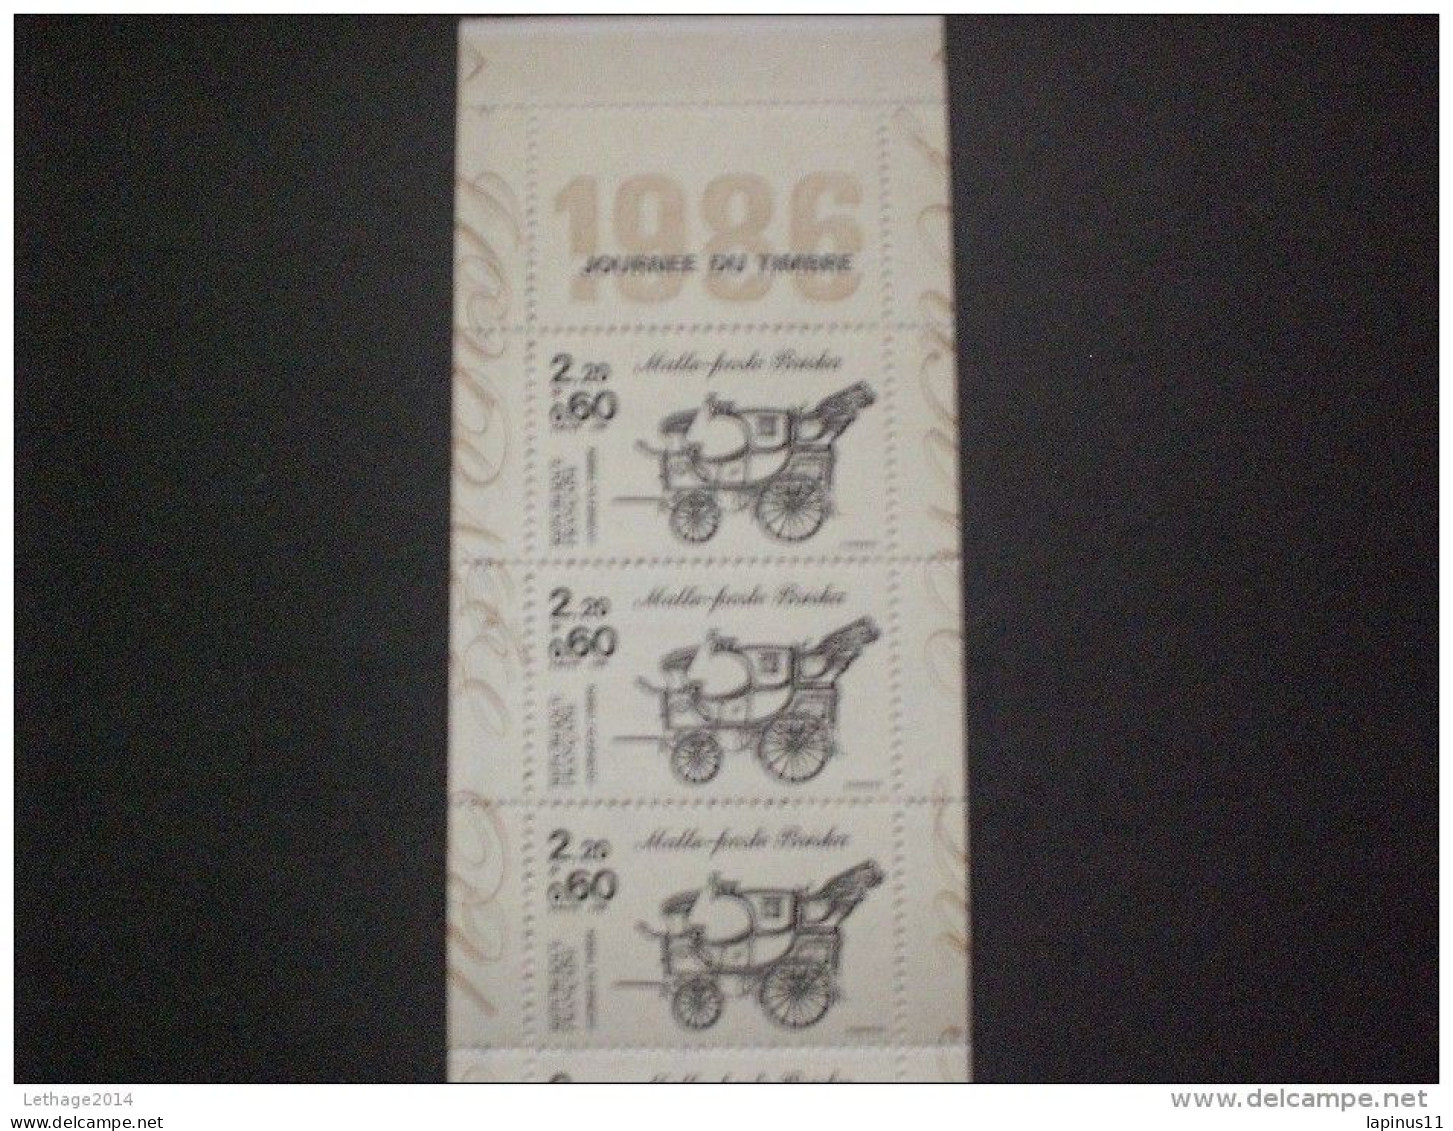 STAMPS FRANCE CARNETS 1986 Stamp Day - Bekende Personen